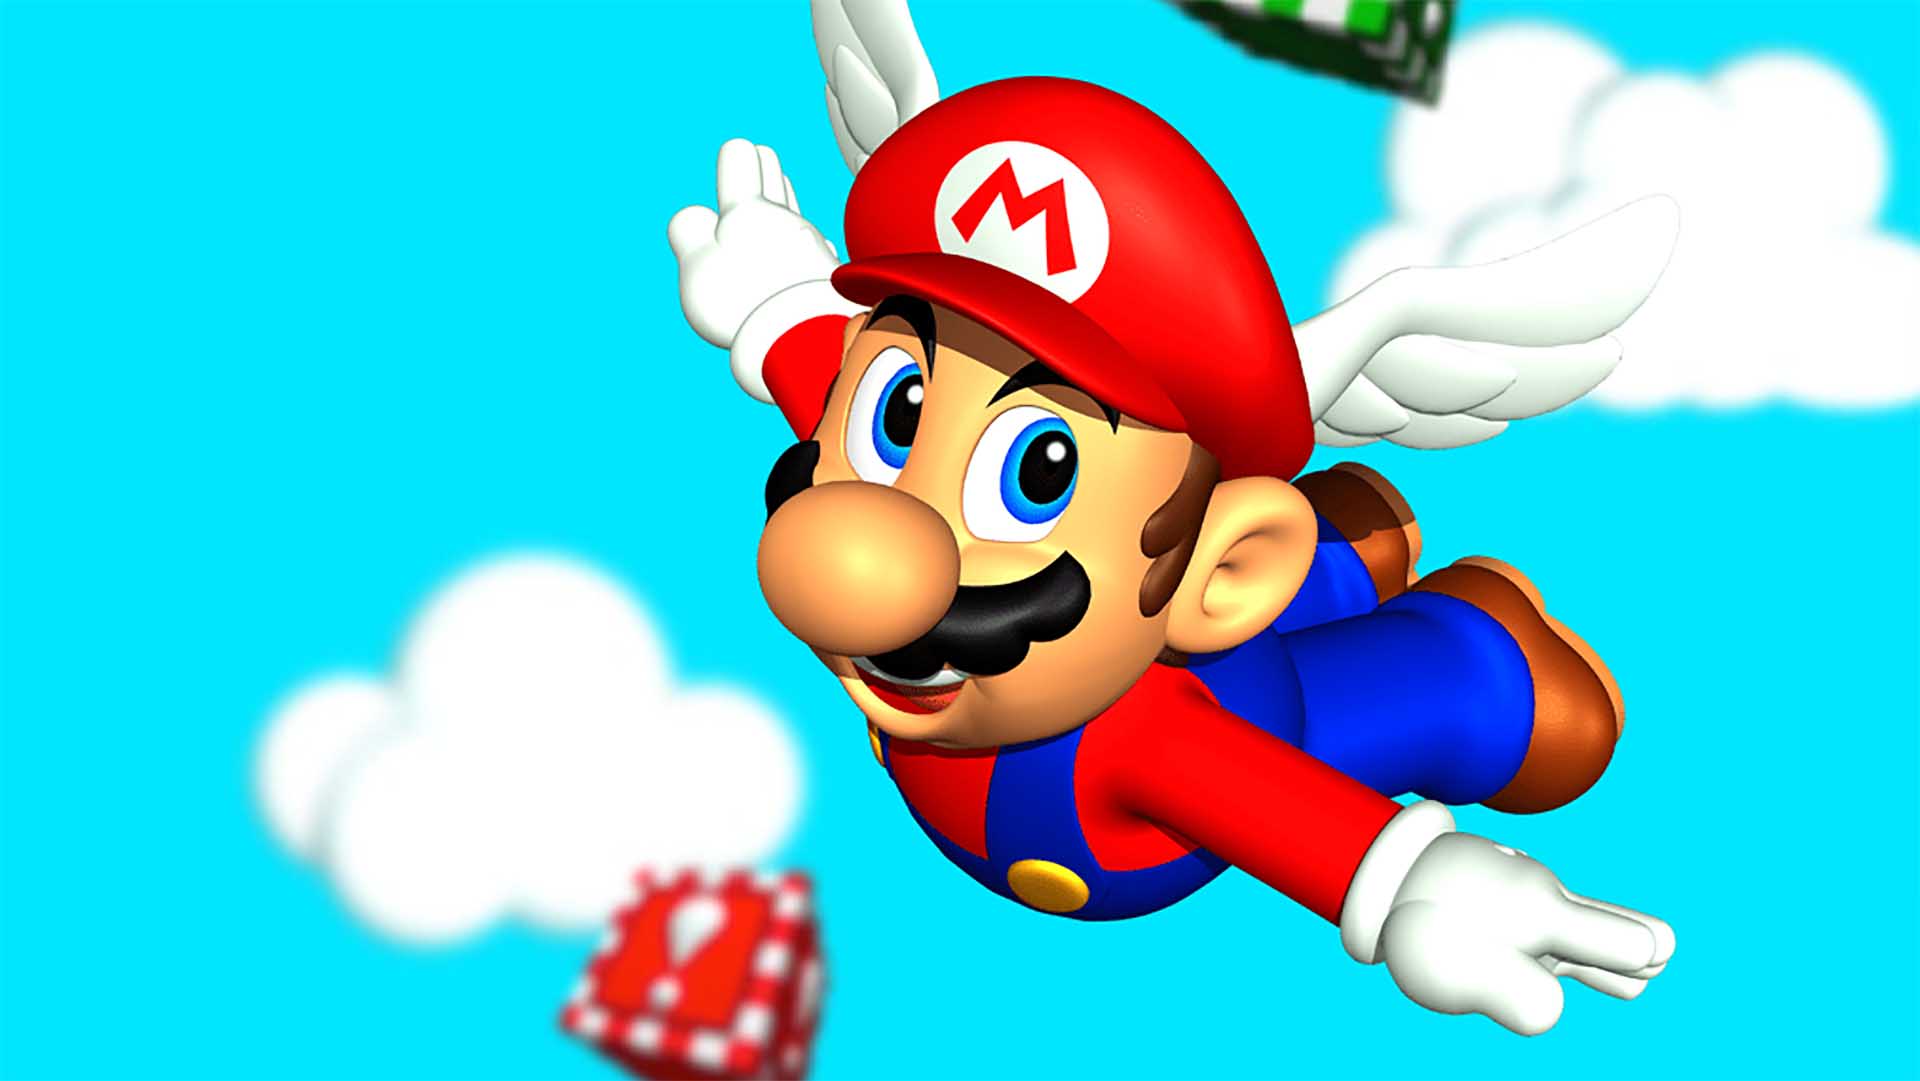 Super Mario 64 cambia cómo percibimos nuestro entorno, según este estudio